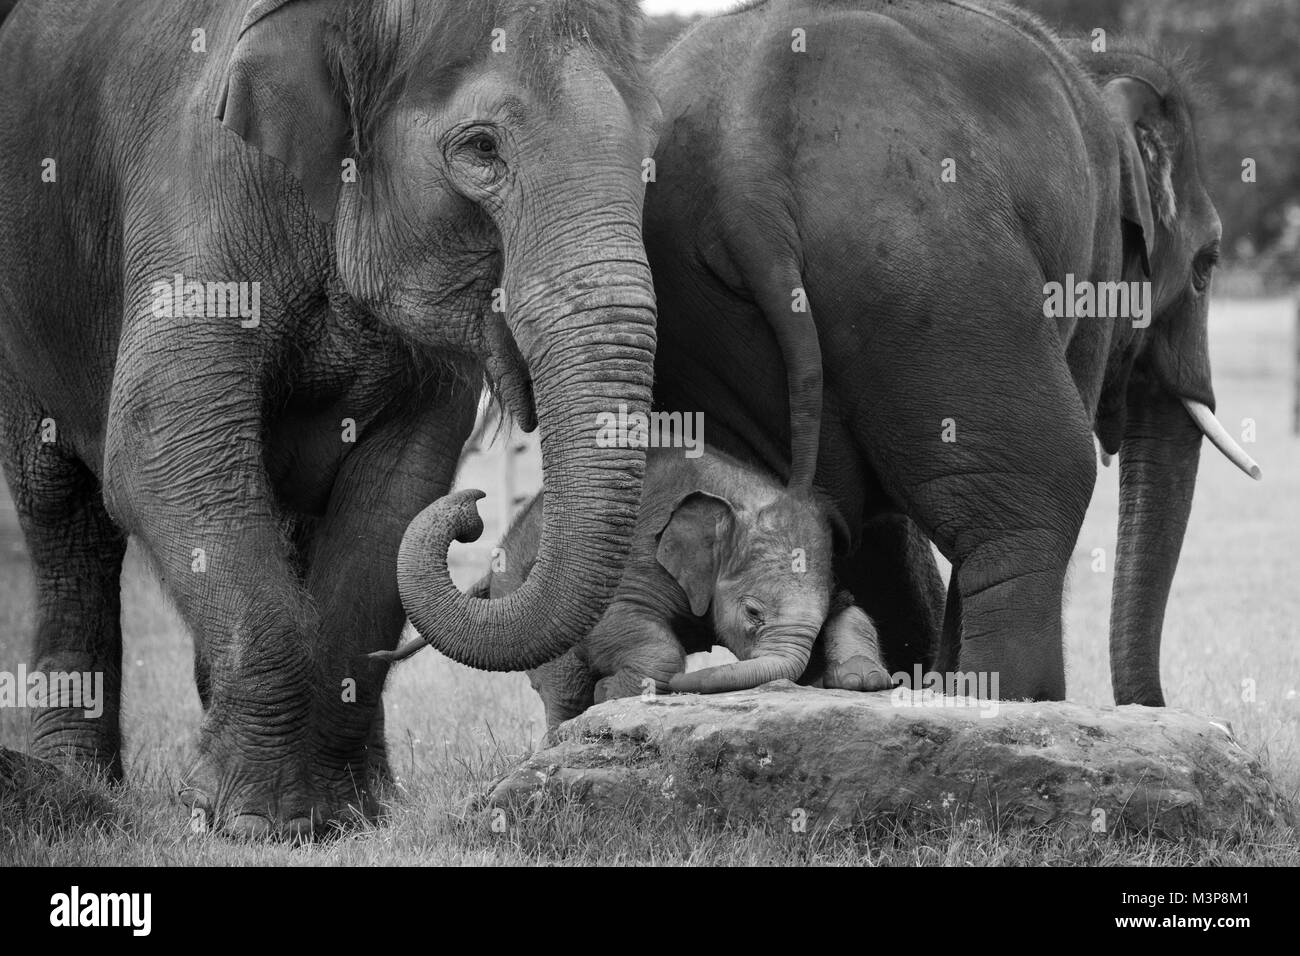 Bébé éléphant asiatique, essayant de grimper sur un rocher entouré de deux adultes au ZSL zoo de Whipsnade Banque D'Images